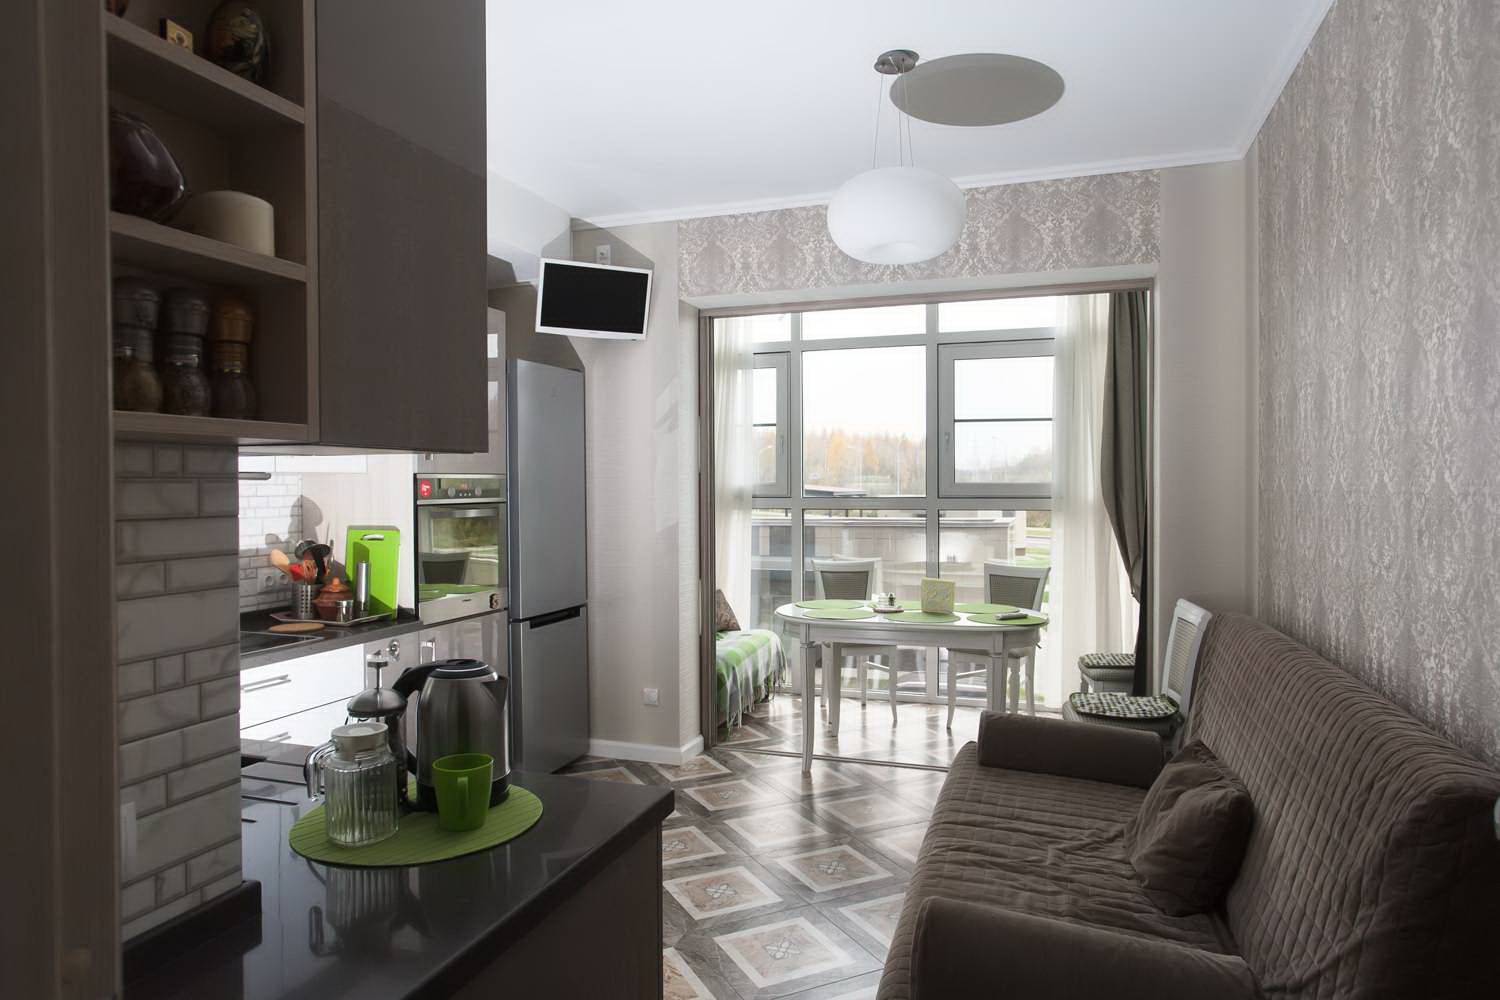 Кухня совмещенная с балконом: фото, дизайн, варианты объединения